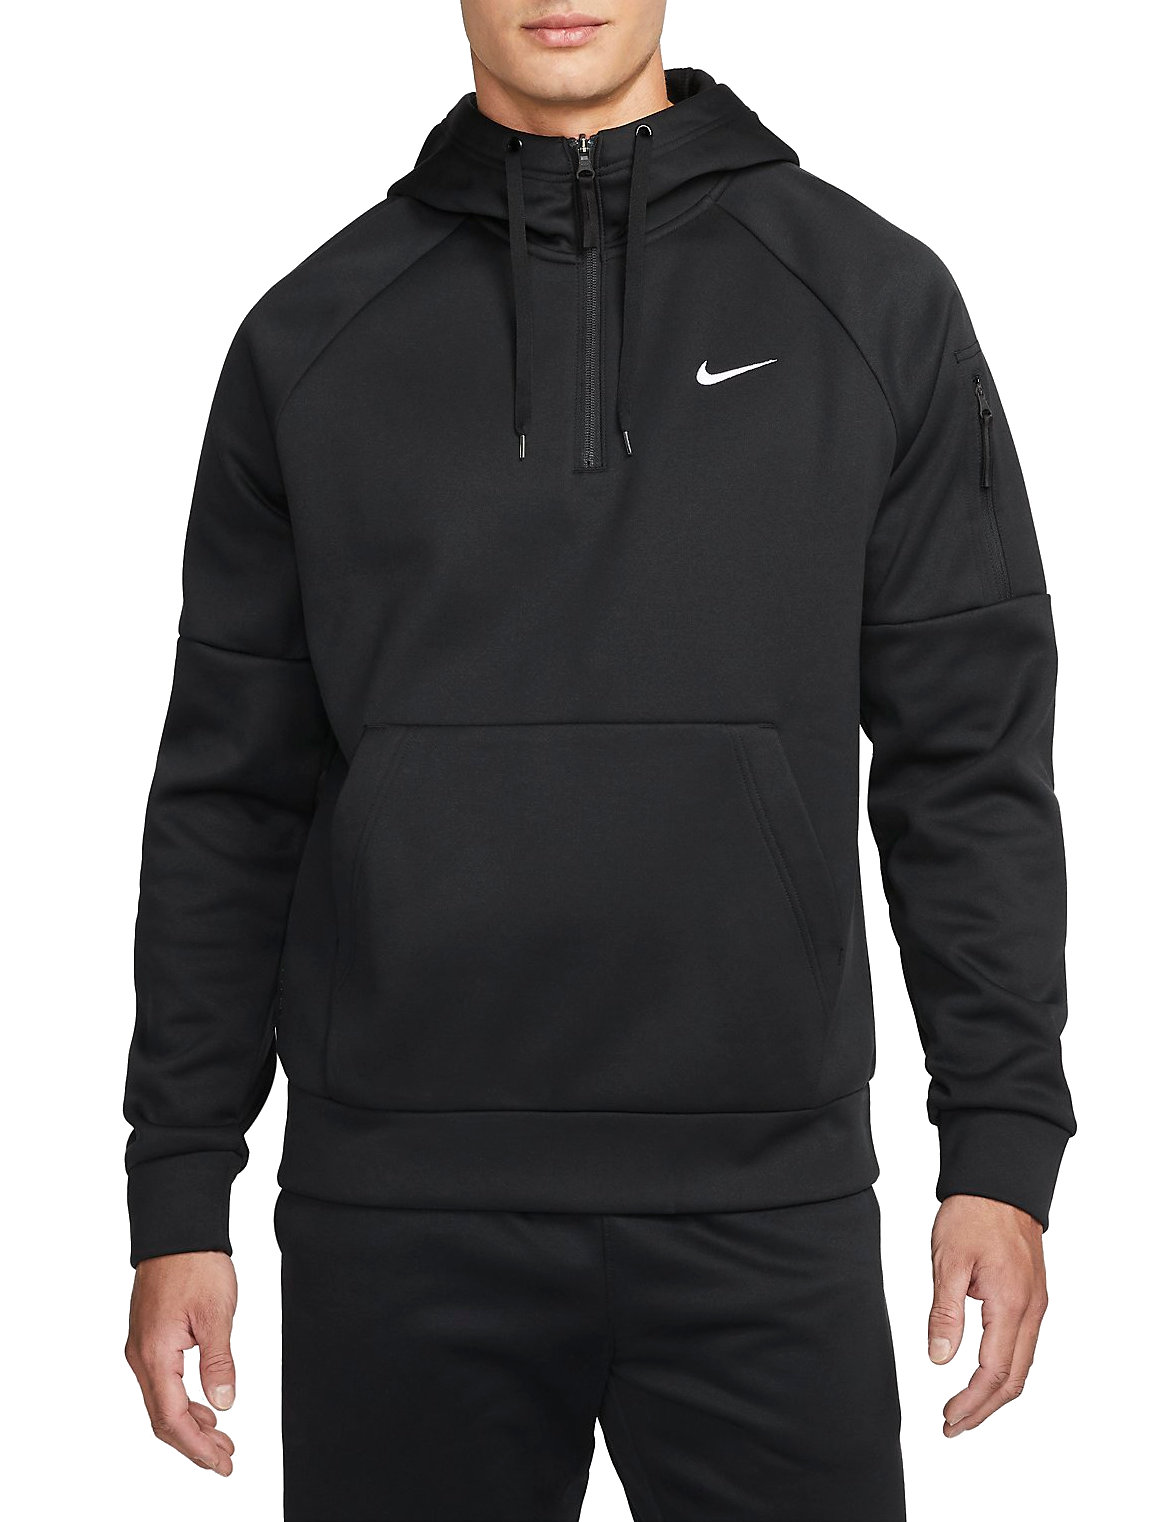 Regulatie Bestrating Wardianzaak Hooded sweatshirt Nike Therma-FIT Men s 1/4-Zip Fitness Hoodie -  Top4Fitness.com